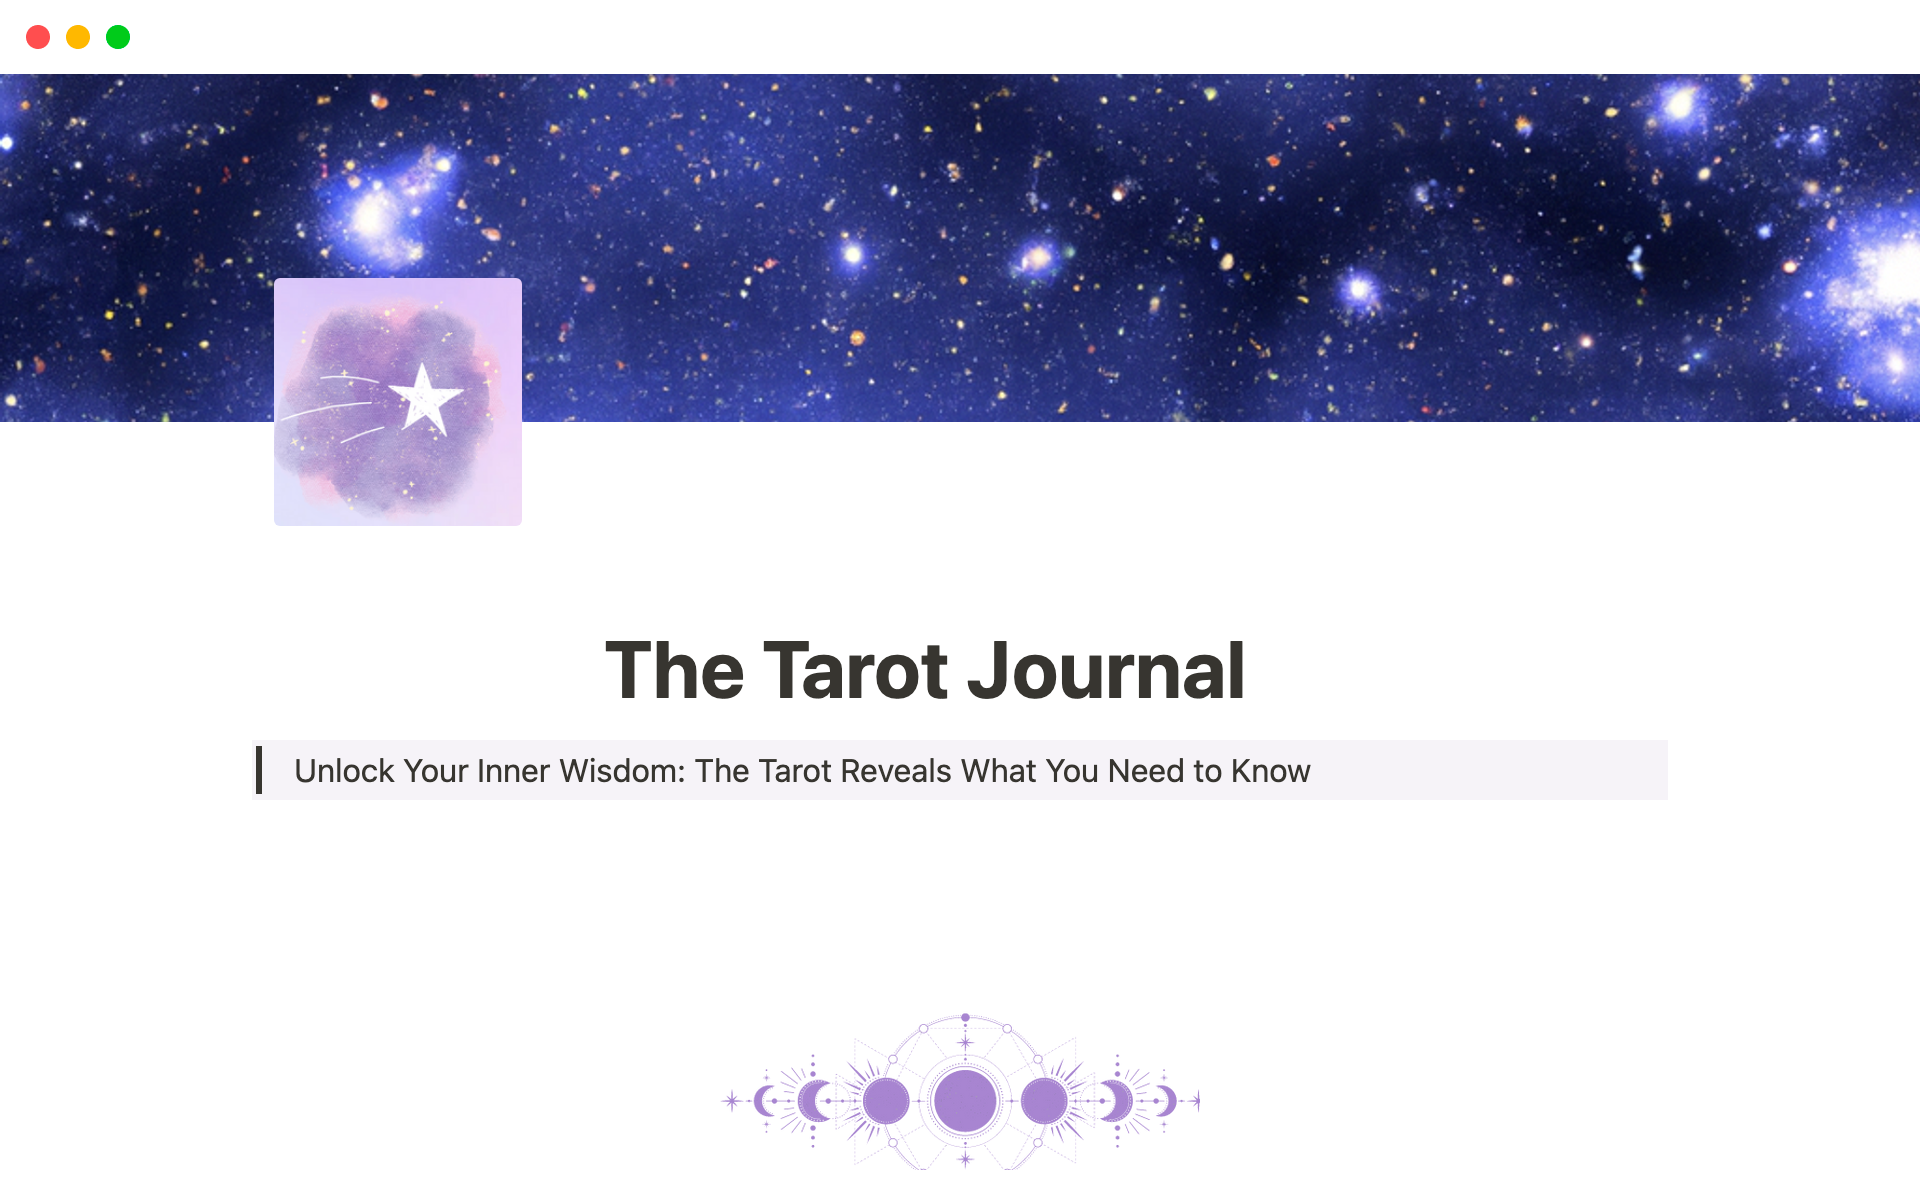 Vista previa de plantilla para Ultimate Tarot Journal